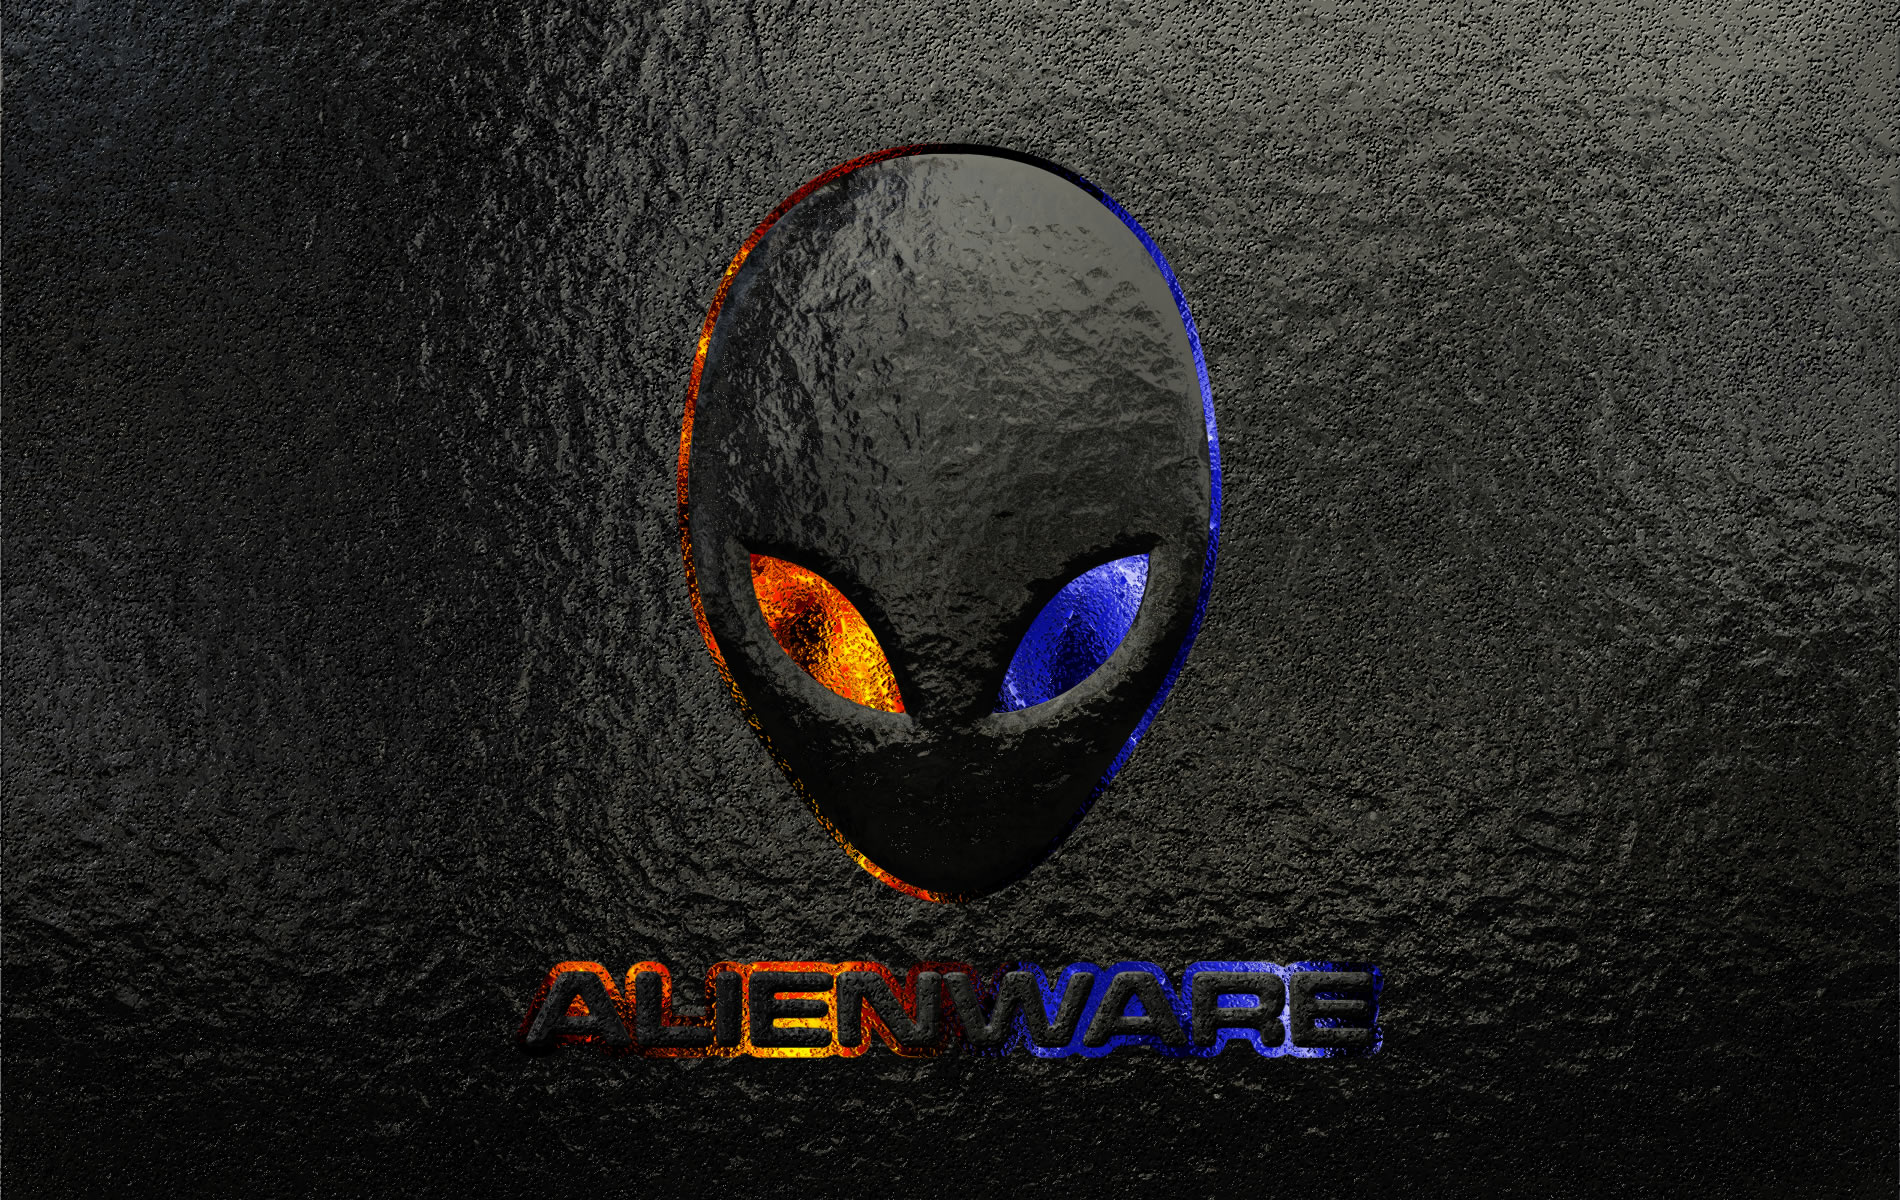 alienware, technology, logo 4K